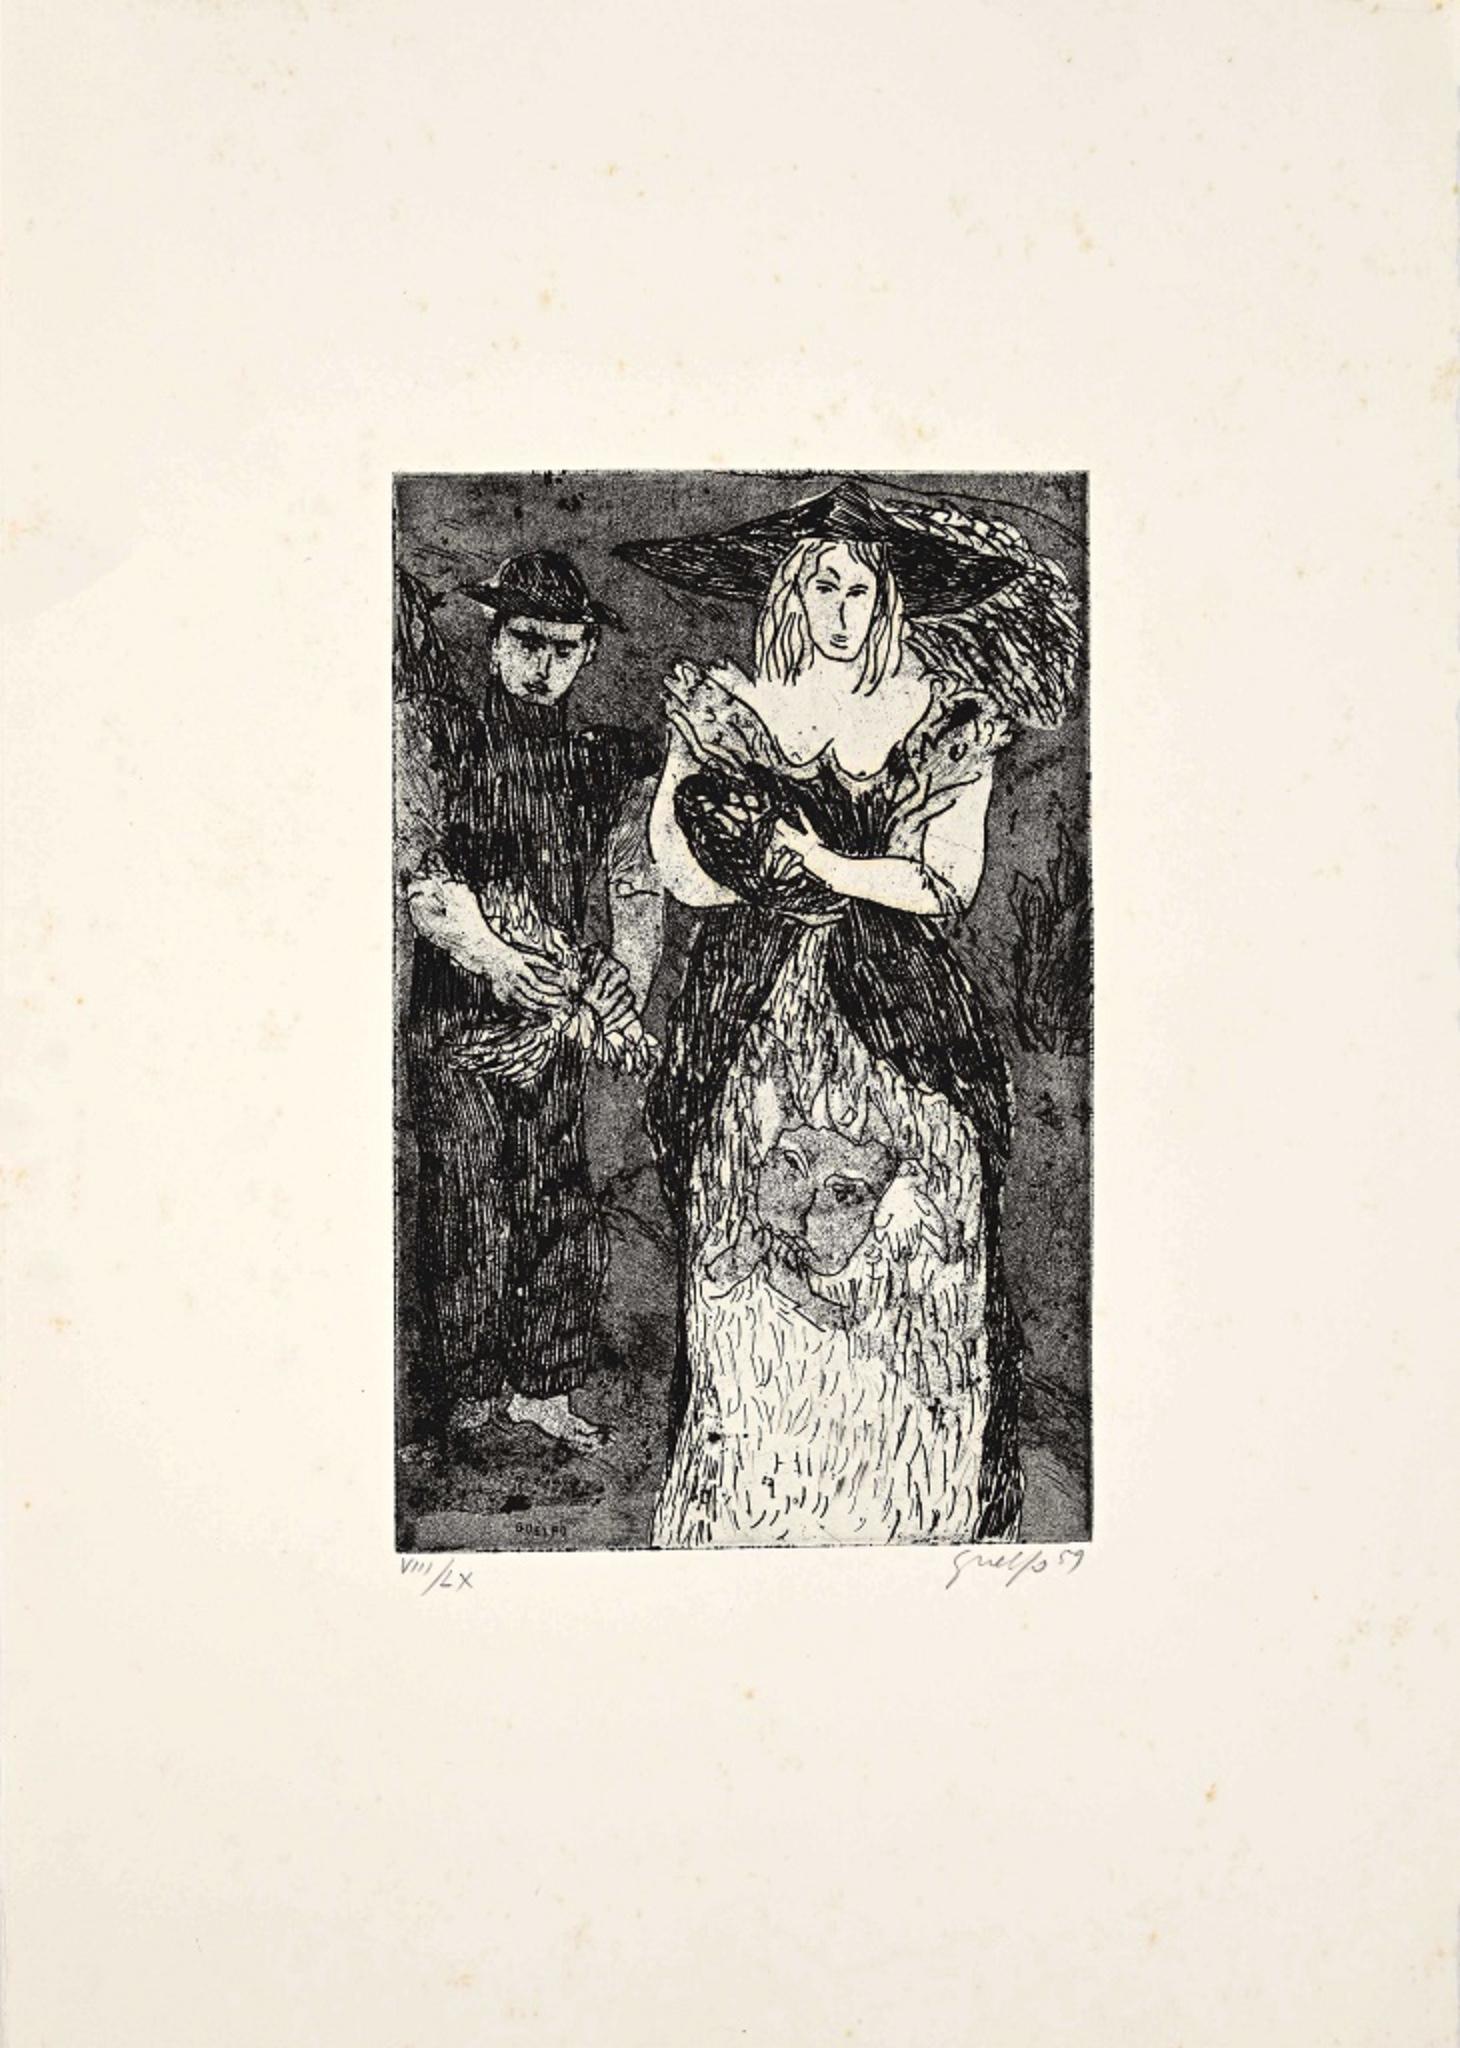 Abbildung 3 ist eine Originalradierung von Guelfo Bianchini aus dem Jahr 1959.

Das Kunstwerk ist vom Künstler in der rechten unteren Ecke handsigniert und in der linken unteren Ecke nummeriert (8/60).

In sehr gutem Zustand und auf einen weißen